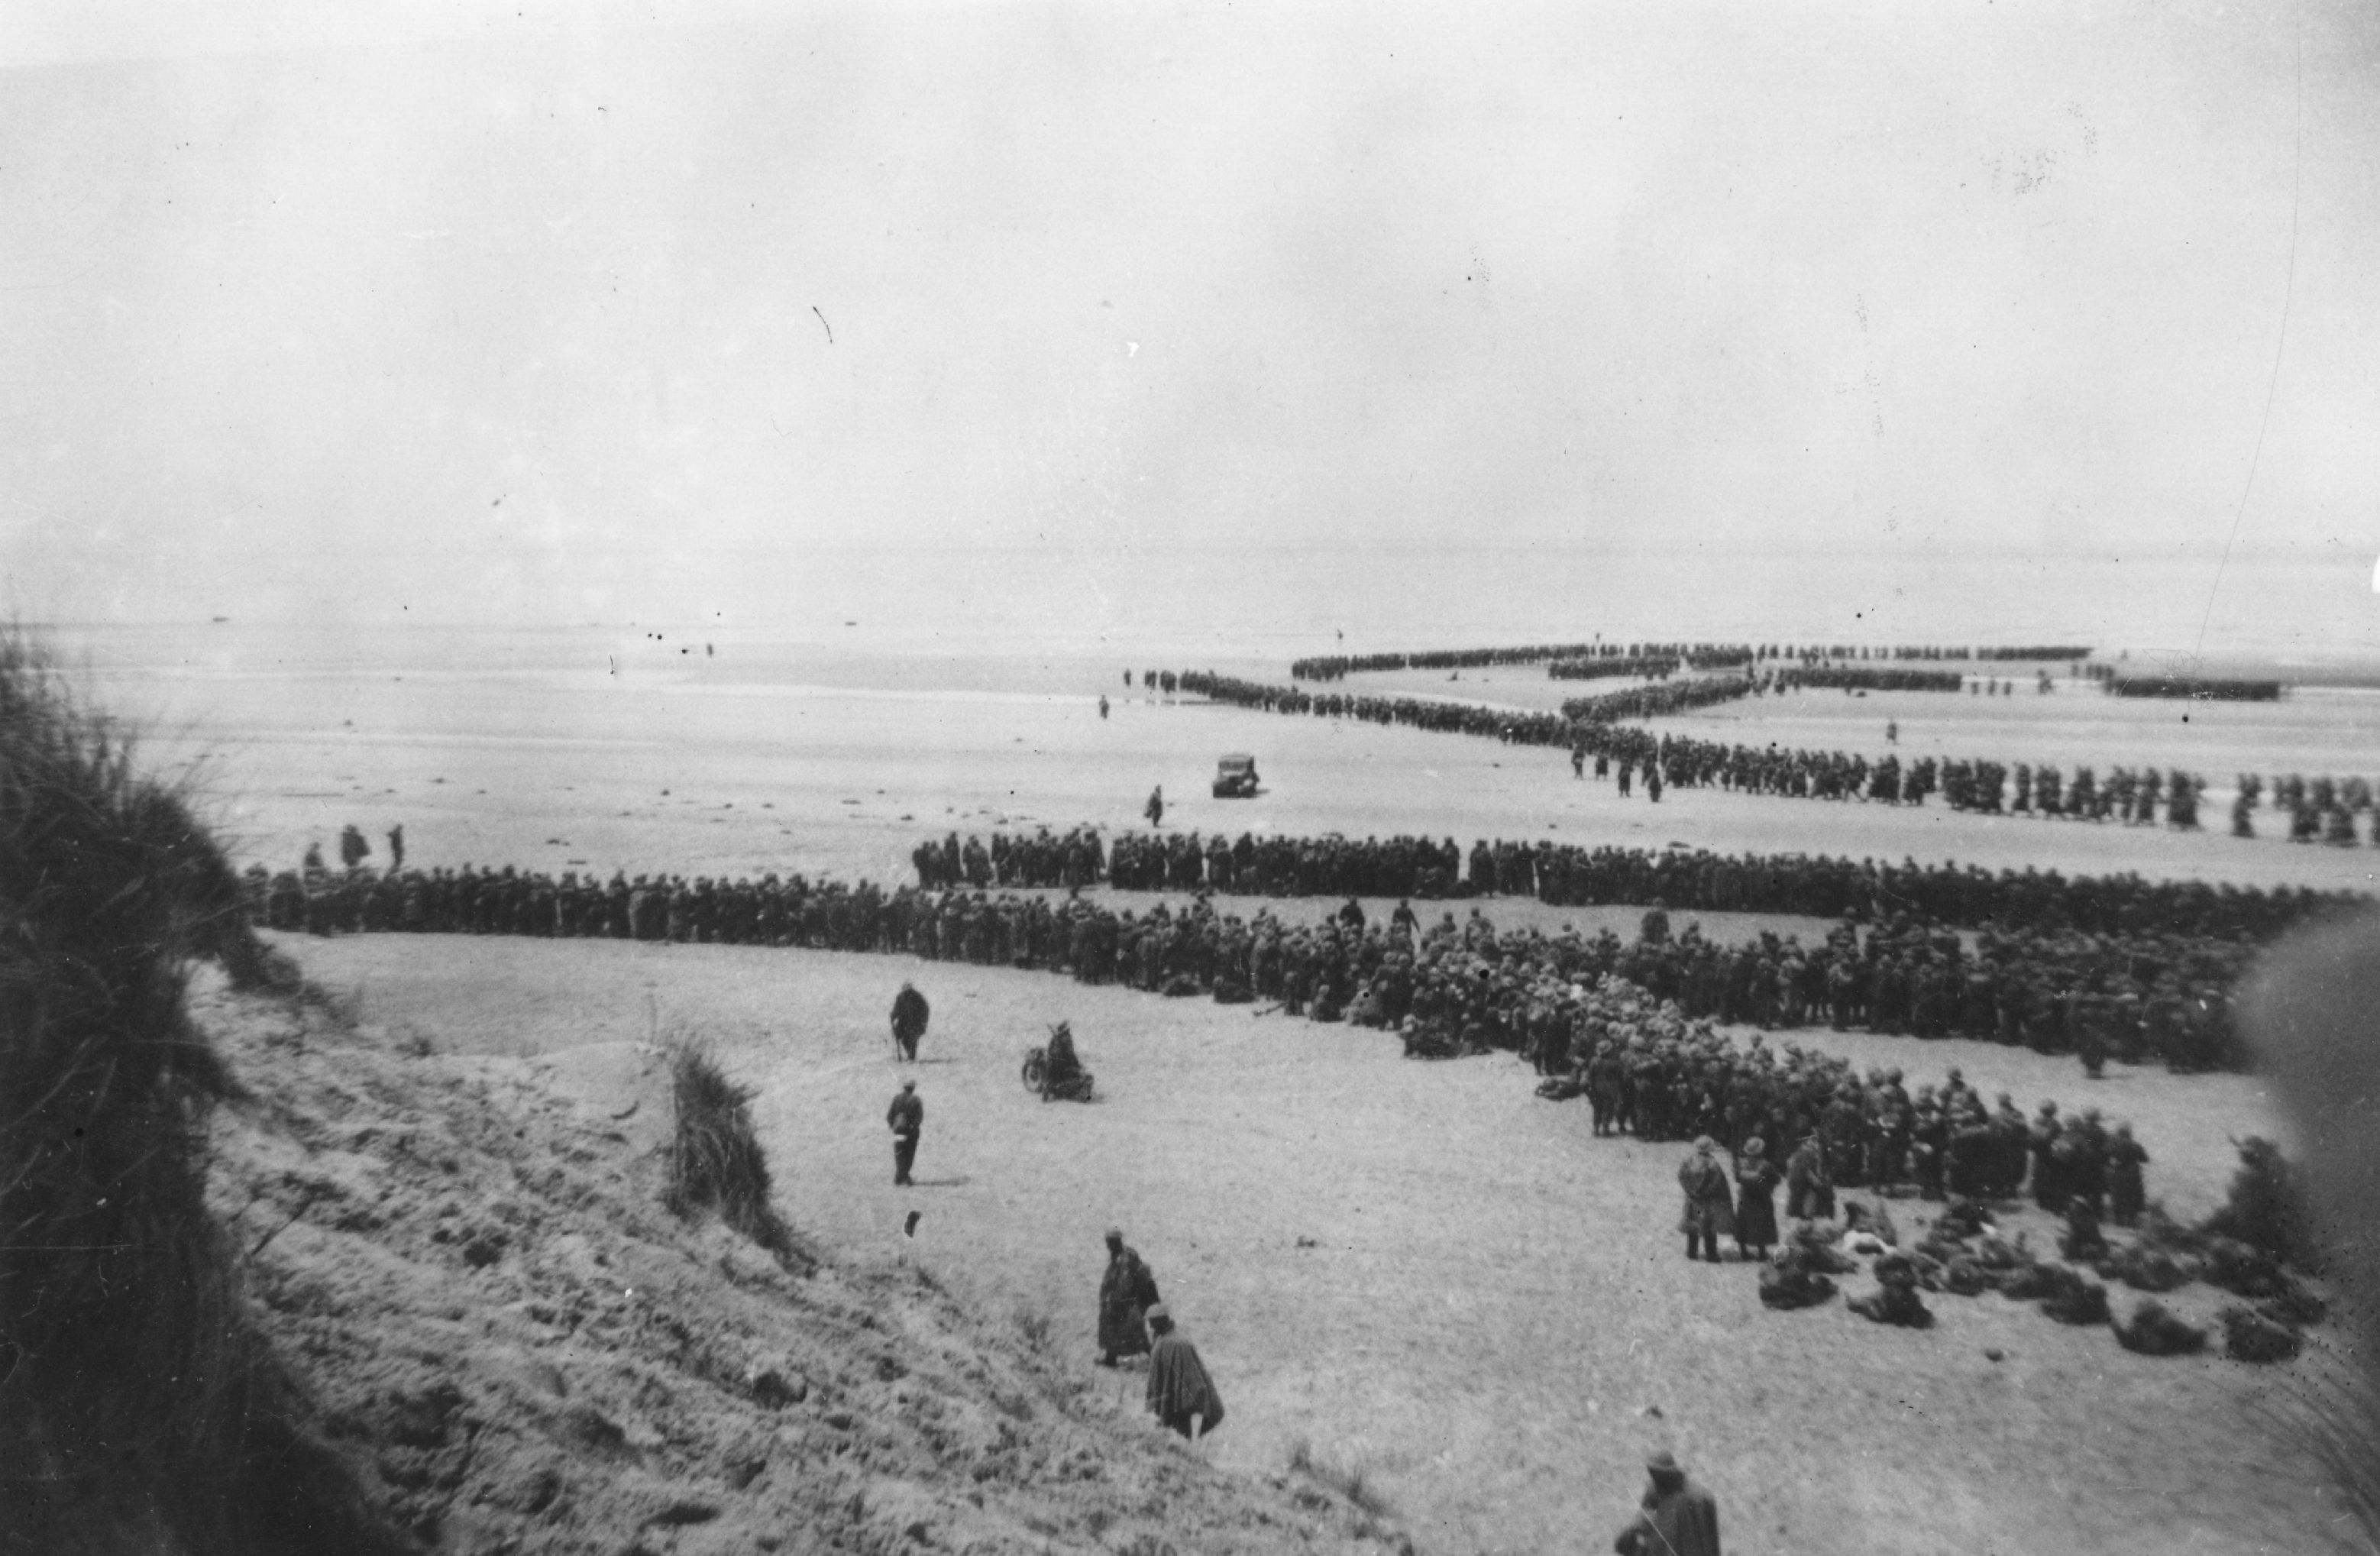 El “milagro” de Dunkerque: la caótica retirada de 338.226 soldados encerrados por los nazis y el enigma de la orden que Hitler no dio